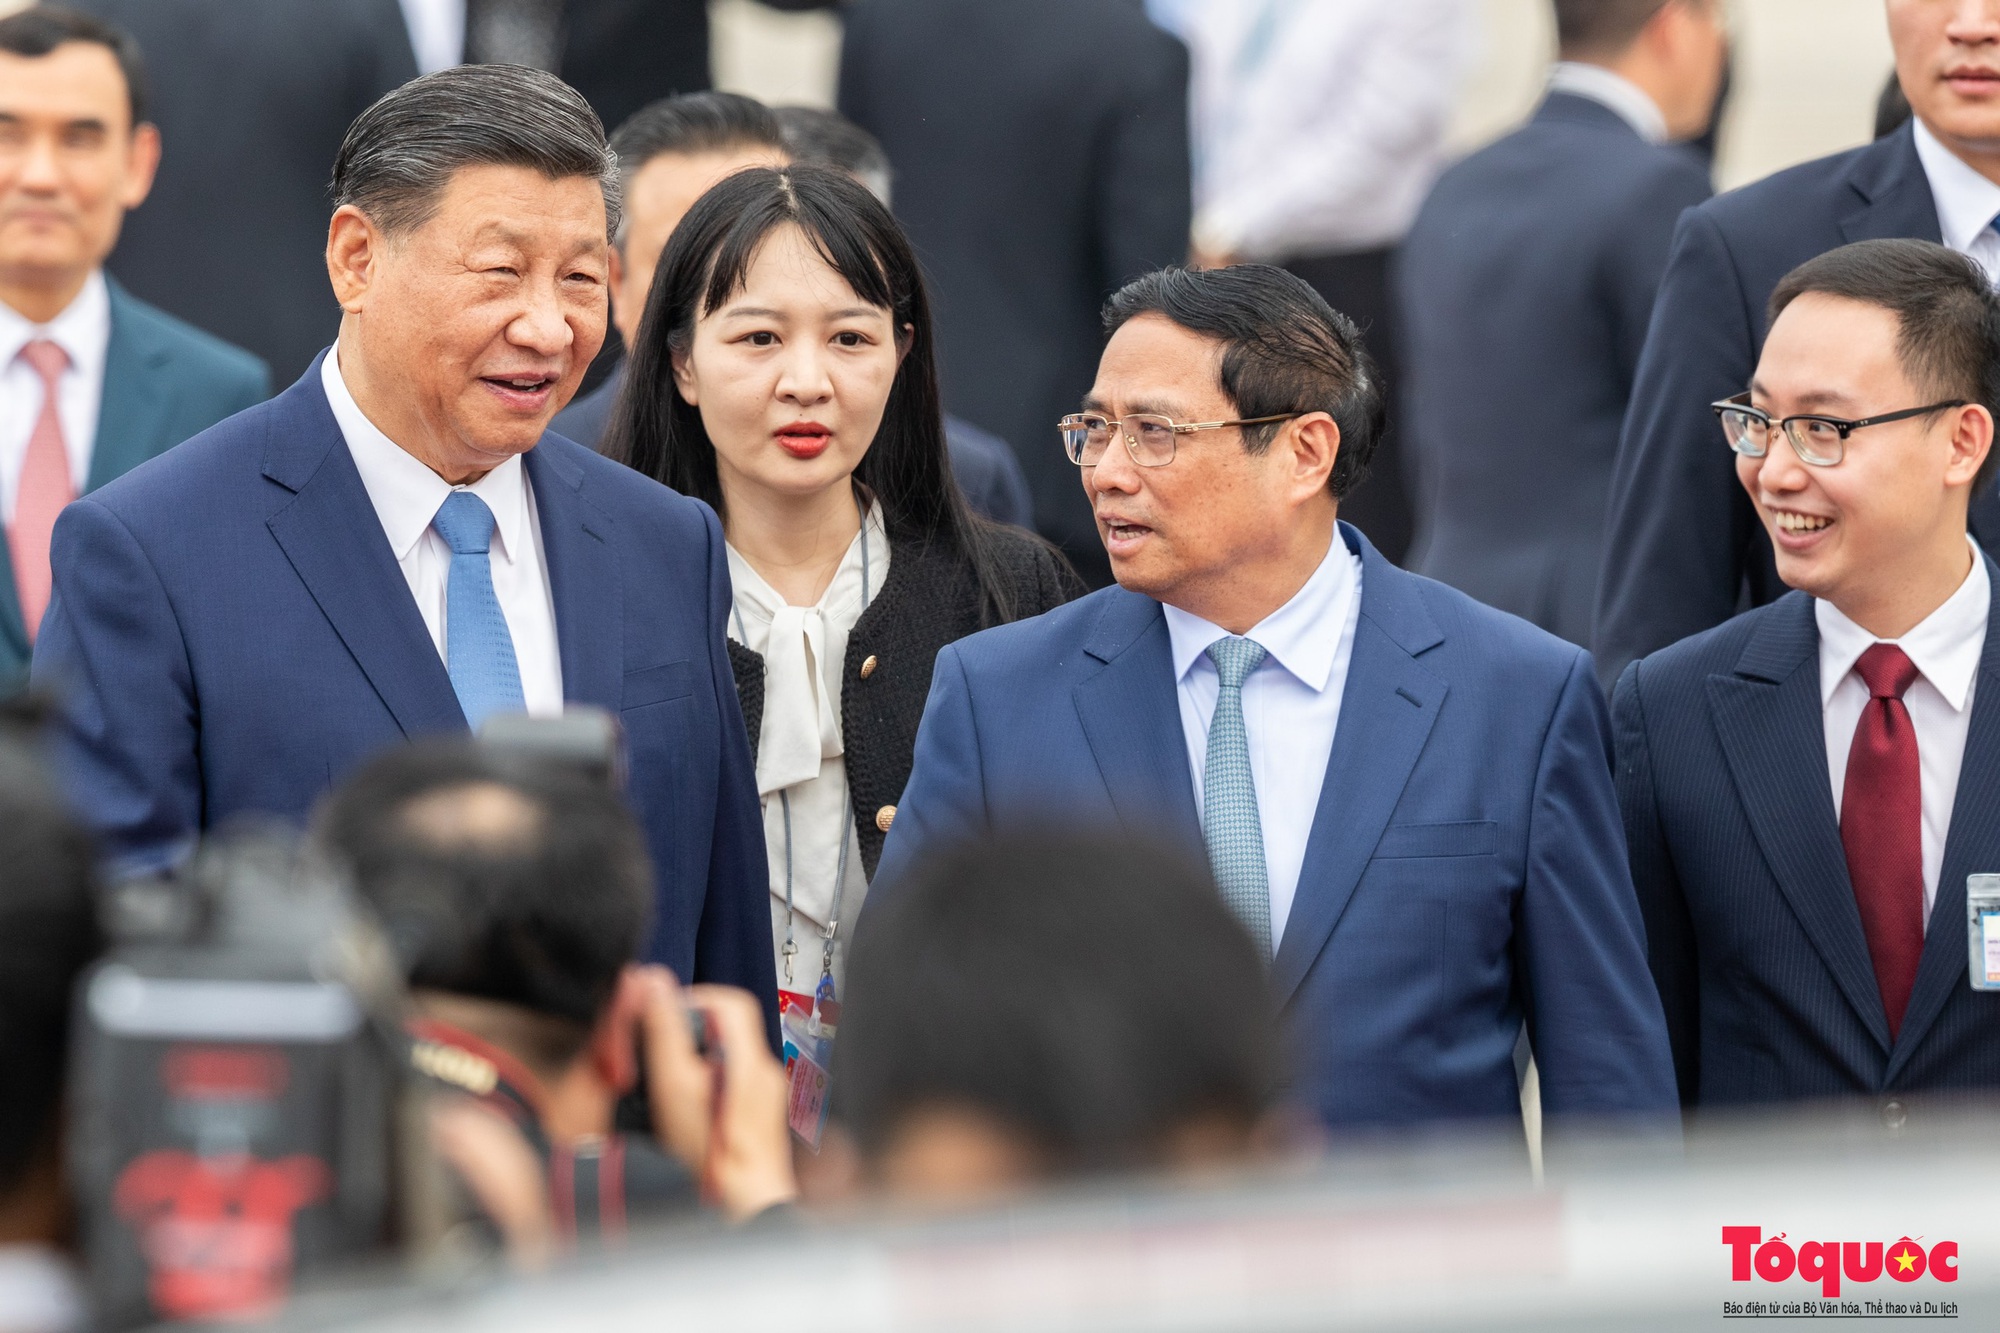 Tổng Bí thư - Chủ tịch nước Trung Quốc Tập Cận Bình và phu nhân đến Hà Nội, bắt đầu thăm Việt Nam - Ảnh 4.